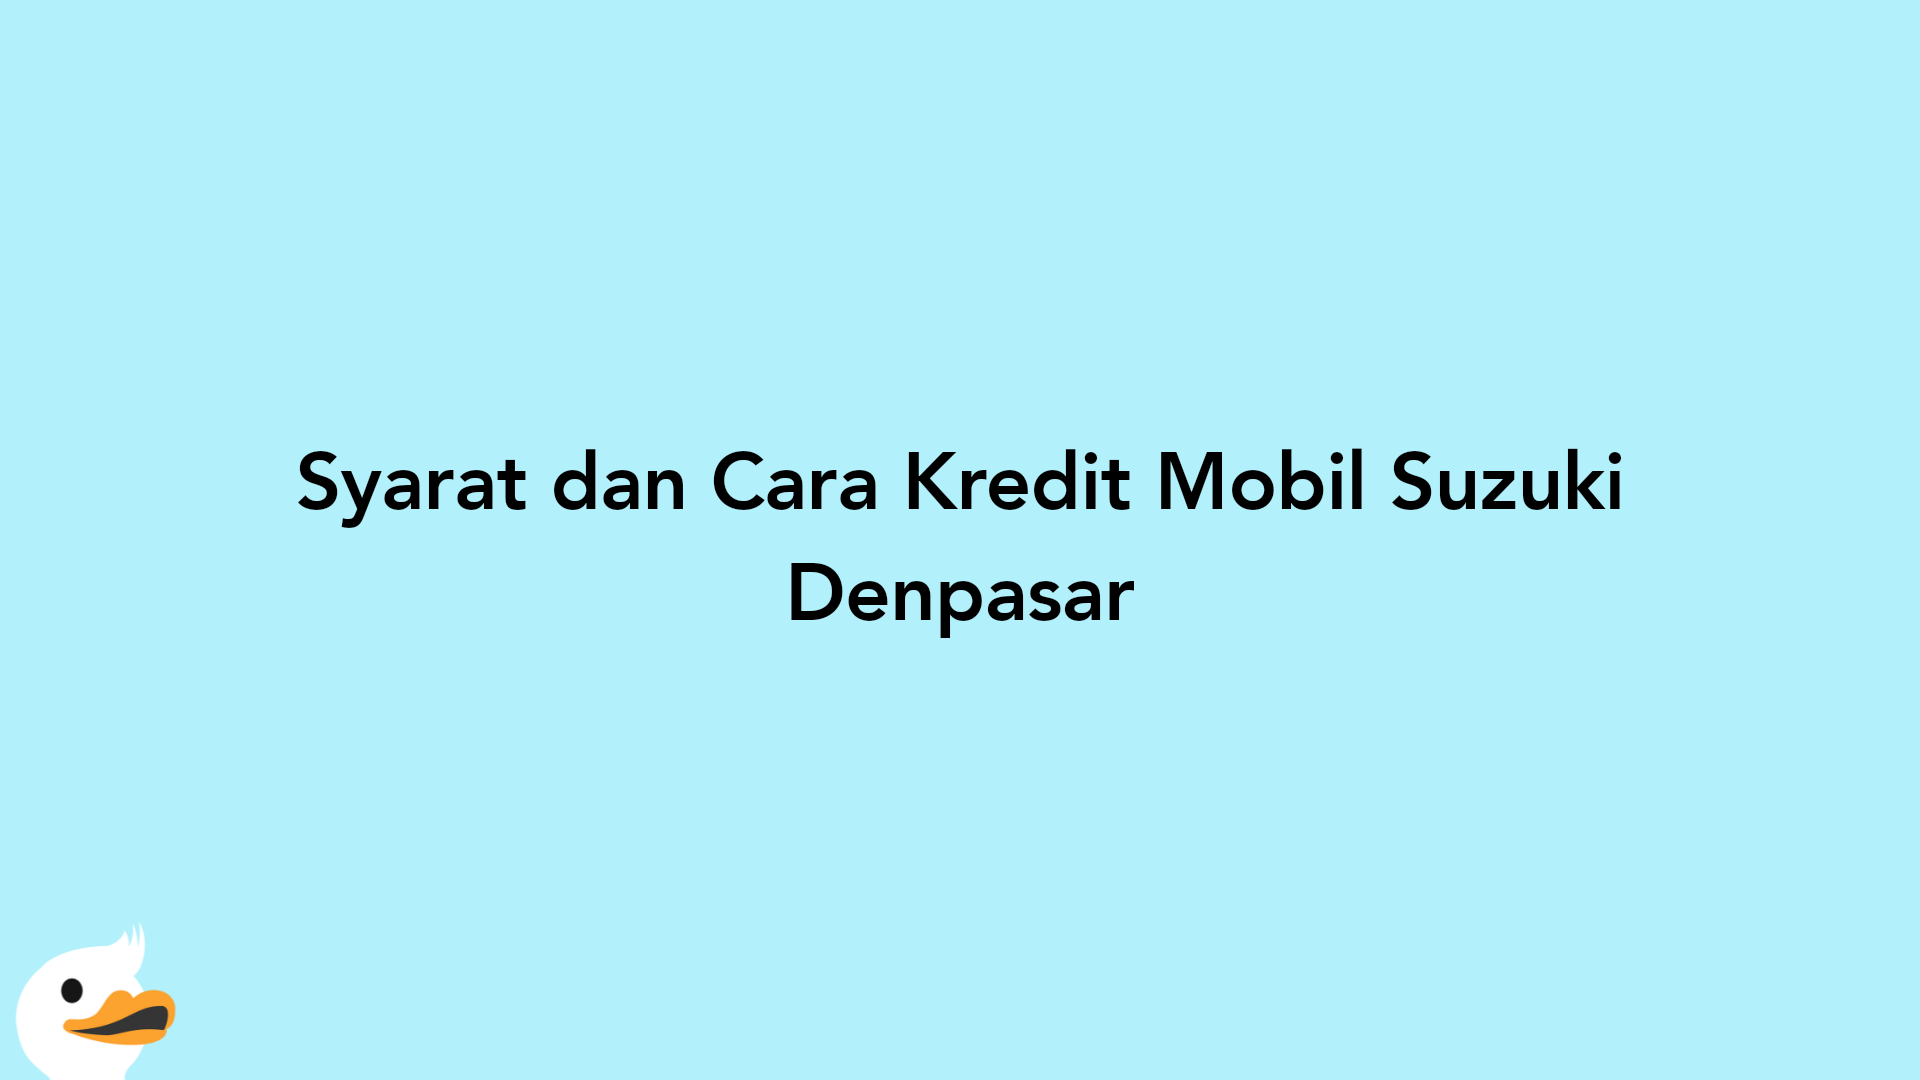 Syarat dan Cara Kredit Mobil Suzuki Denpasar